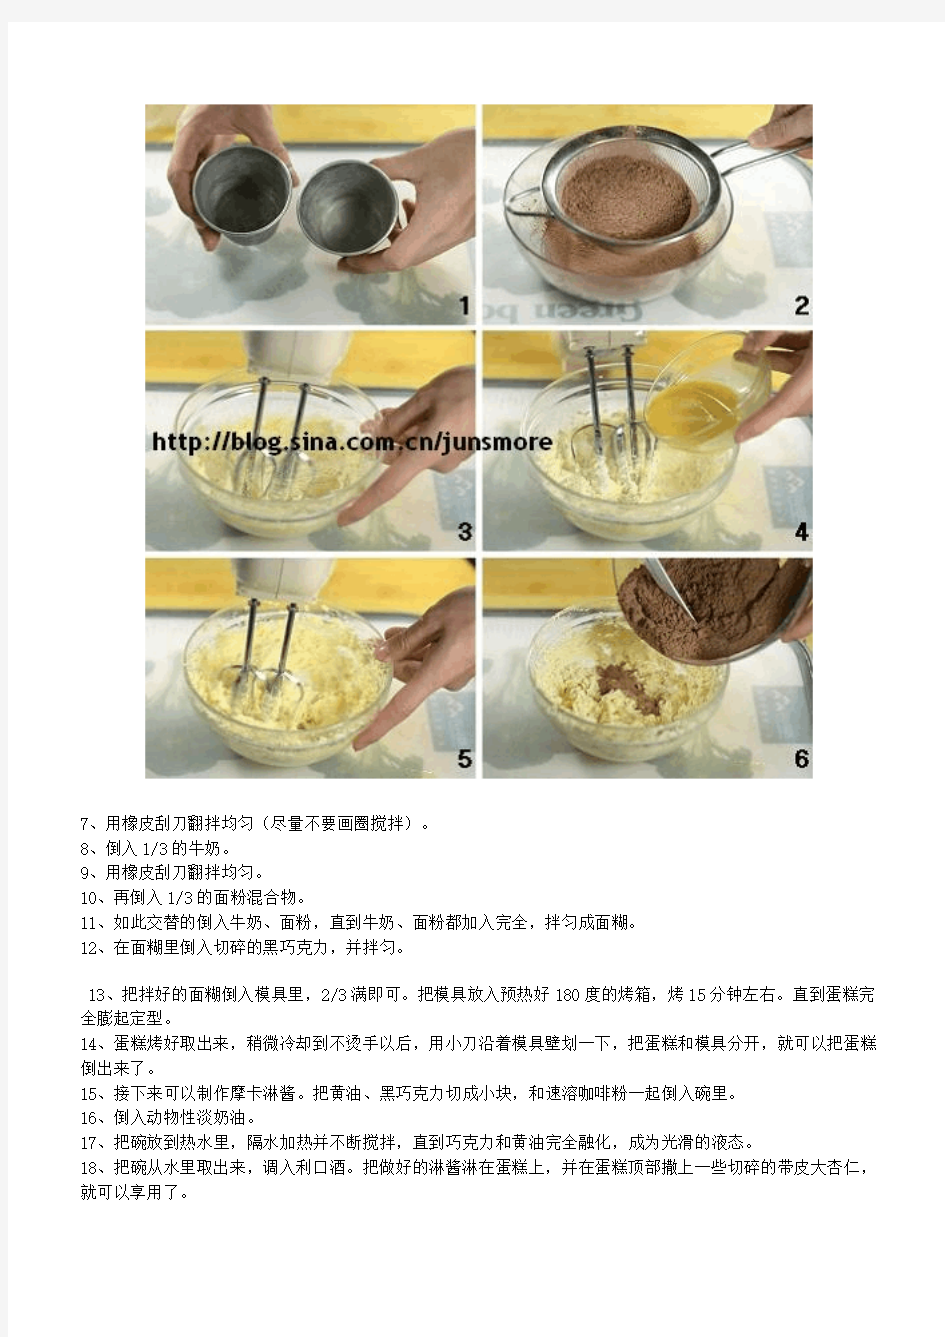 面包、西点、饼干烘焙方法 7 (附目录、详细配方及制作步骤图)